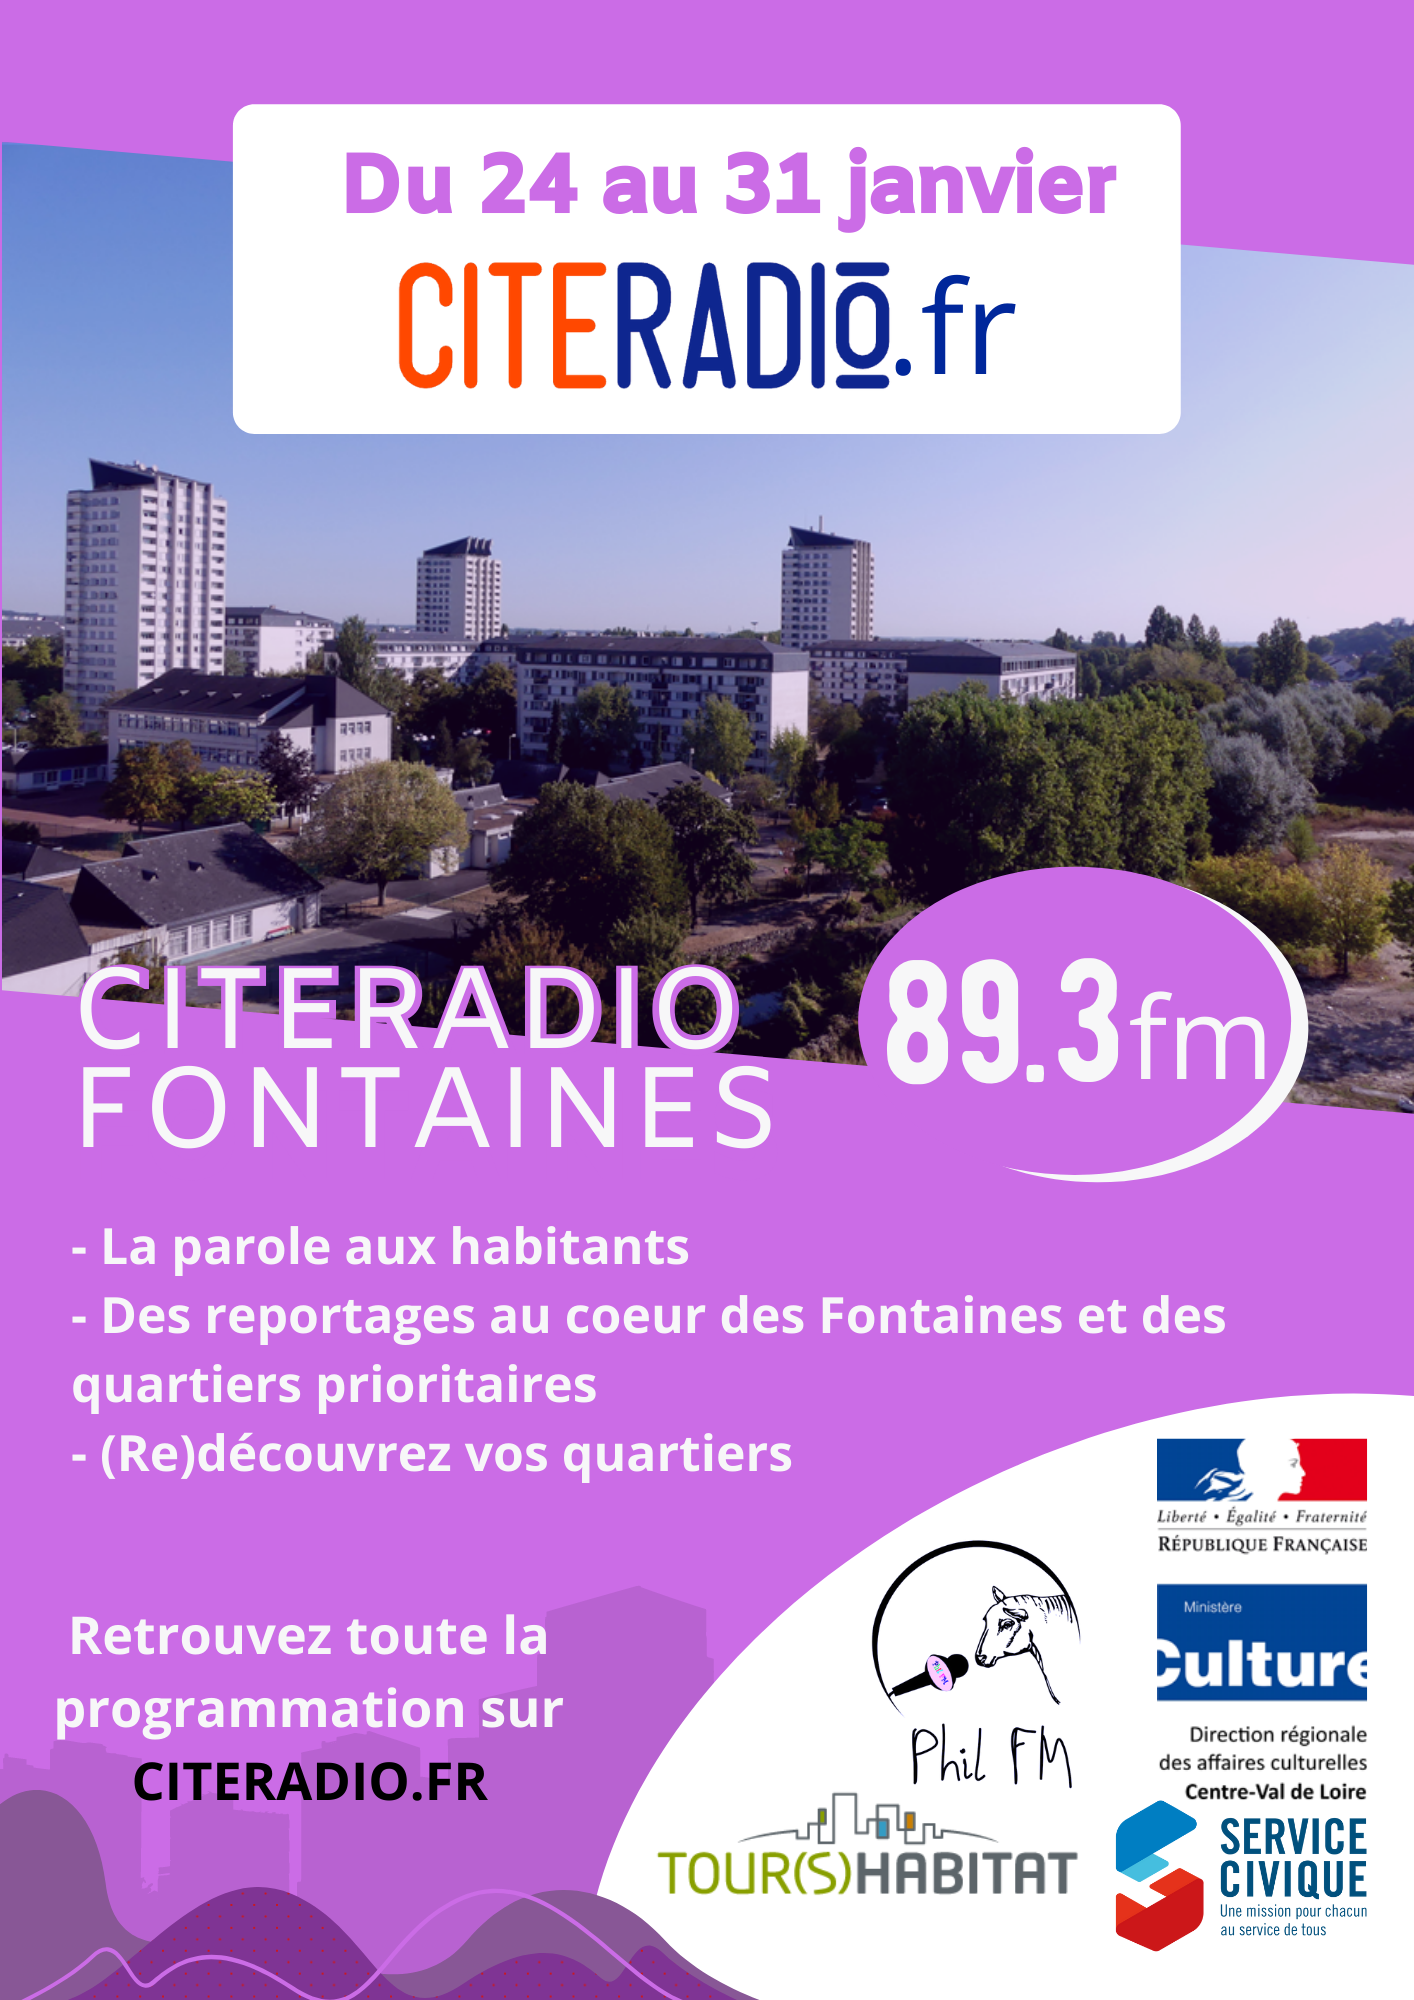 CitéRadio Fontaines : une station temporaire à Tours